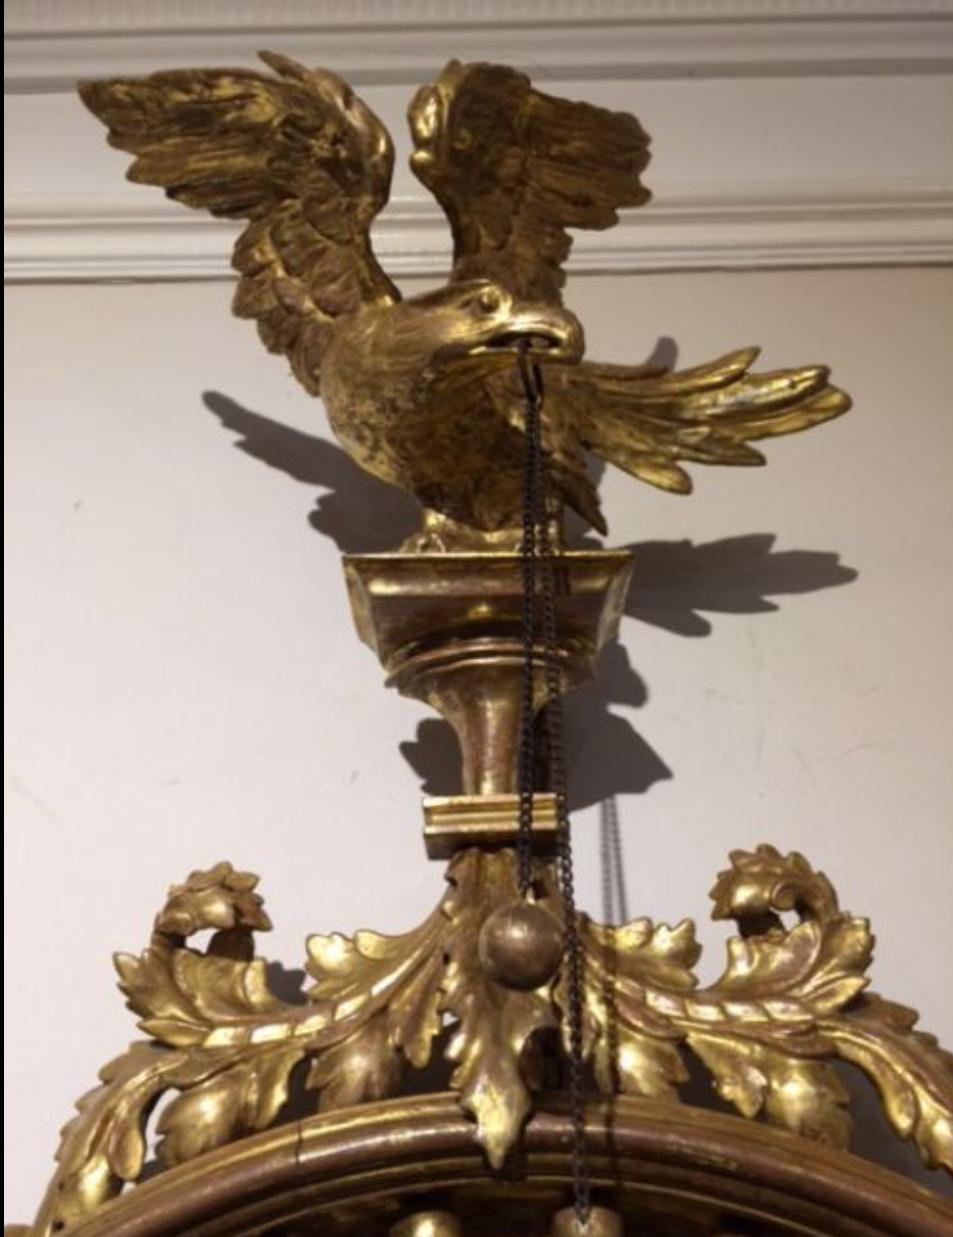 Petit miroir convexe doré et sculpté de la période Régence, cadre décoratif mouluré rehaussé de sphères dorées appliquées et d'une bordure perlée, engobe ébène à l'intérieur, surmonté d'un aigle finement sculpté tenant une boule et des chaînes dans